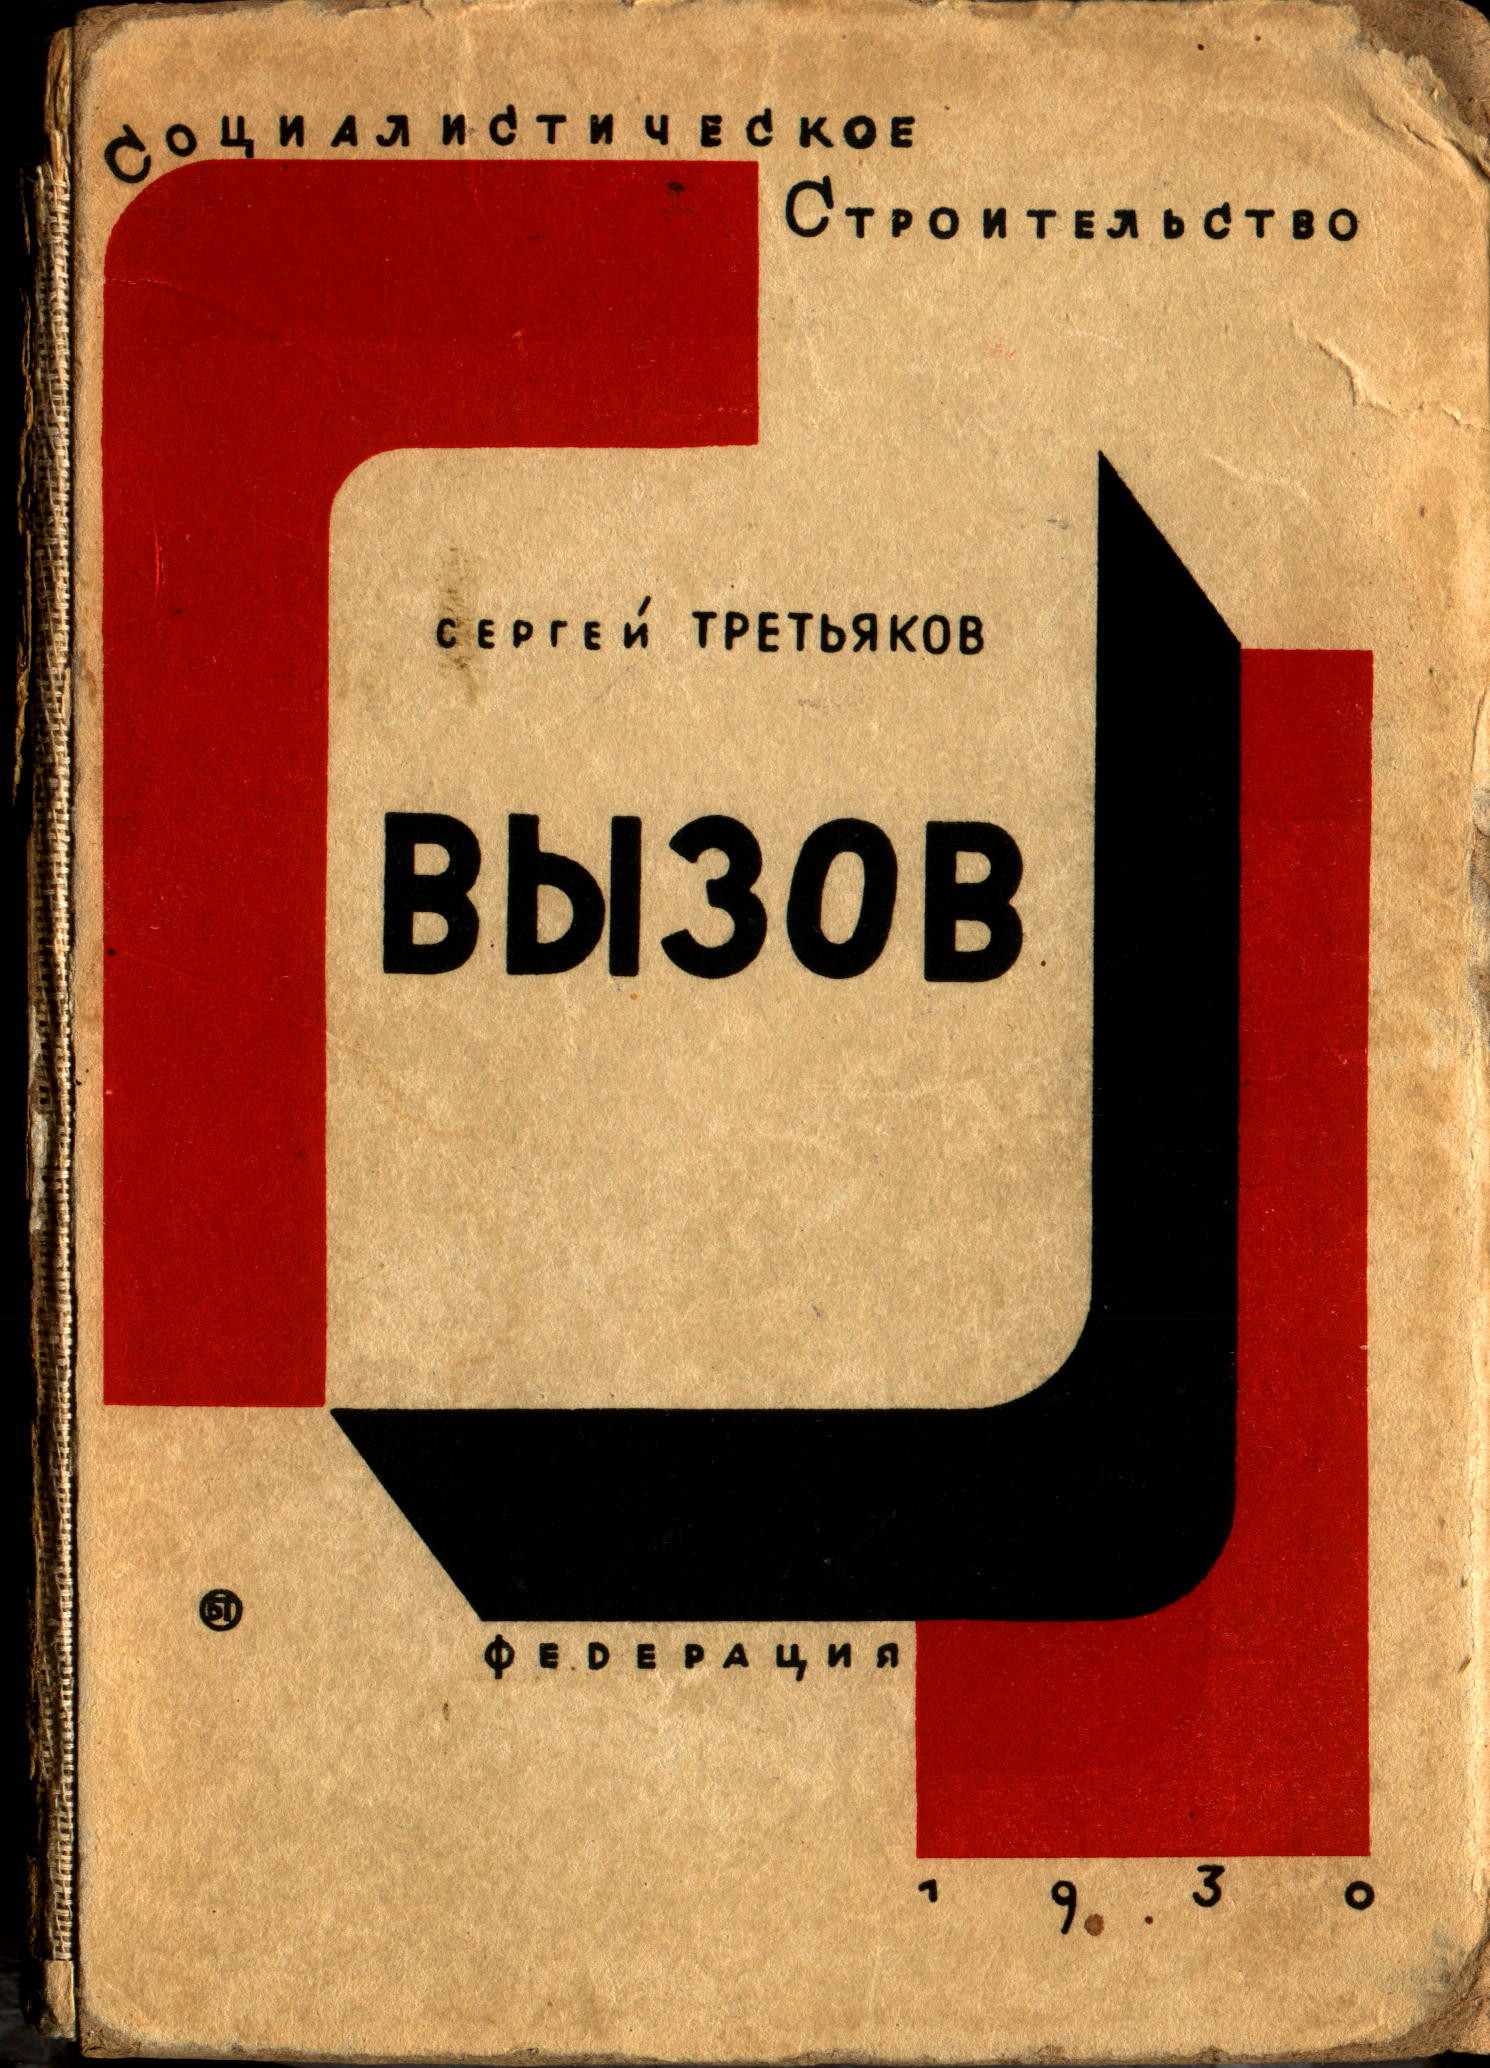 Сборник колхозных очерков Третьякова Вызов (1930), где после Нового ЛЕФа опубликованы оба очерка